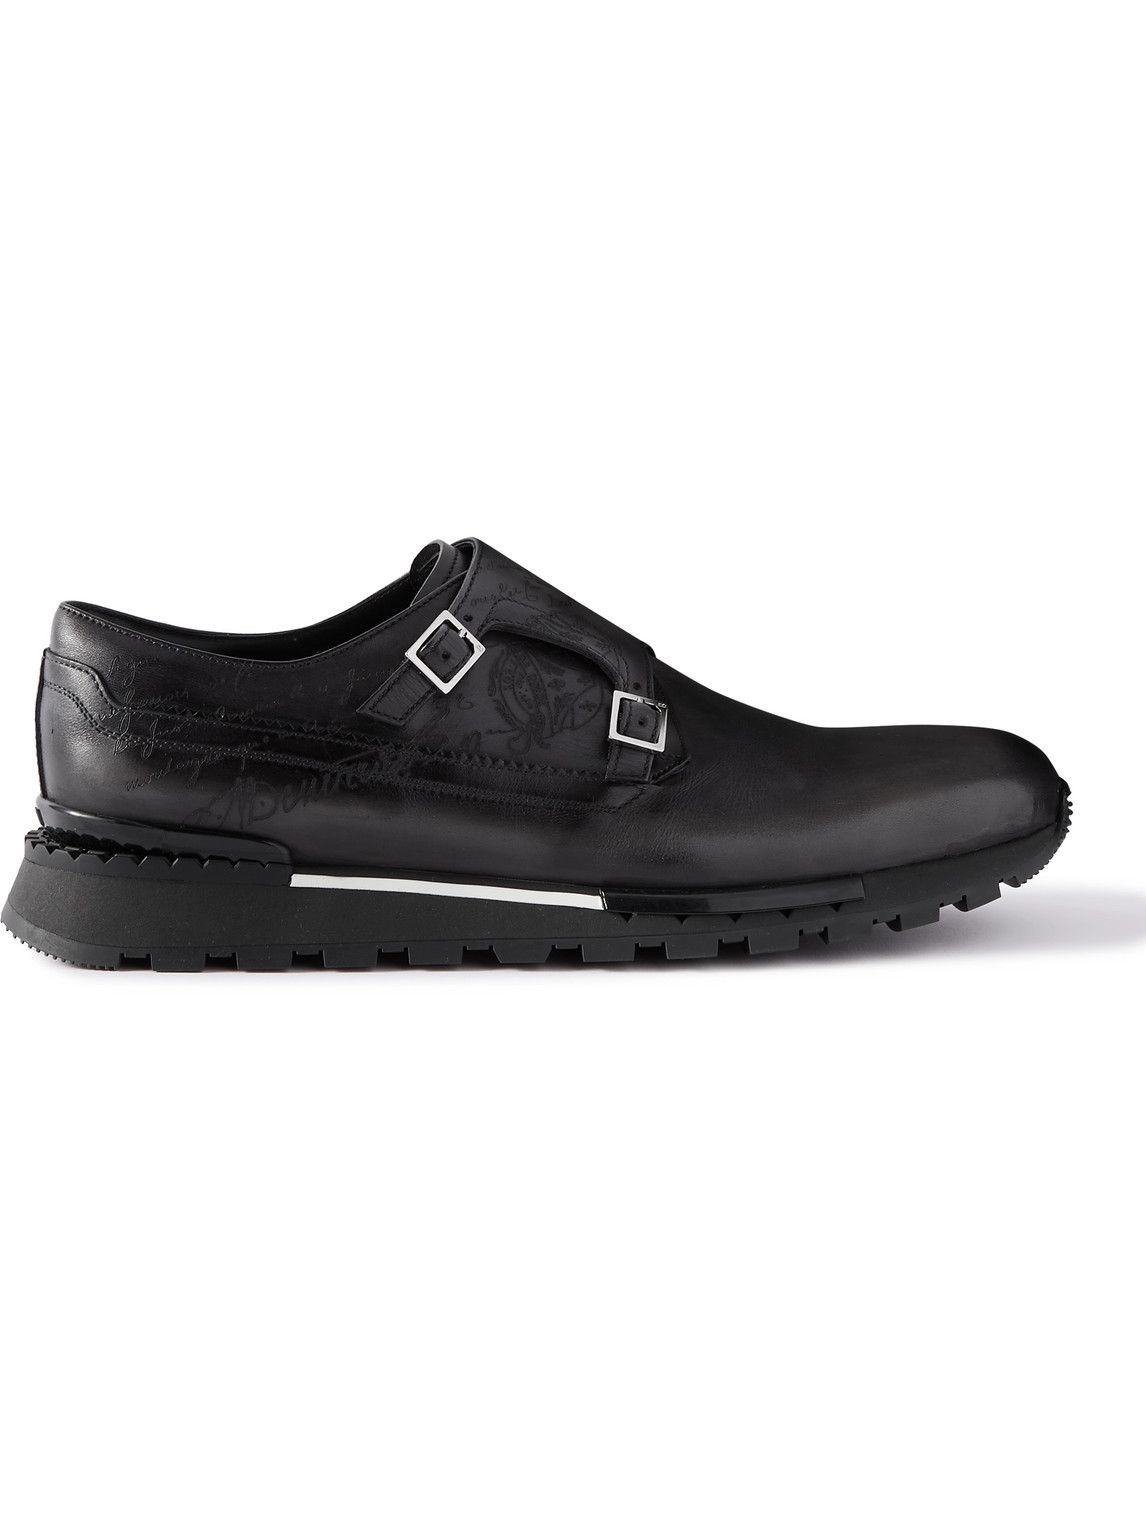 Berluti - Fast Track Scritto Venezia Leather Monk-Strap Sneakers 